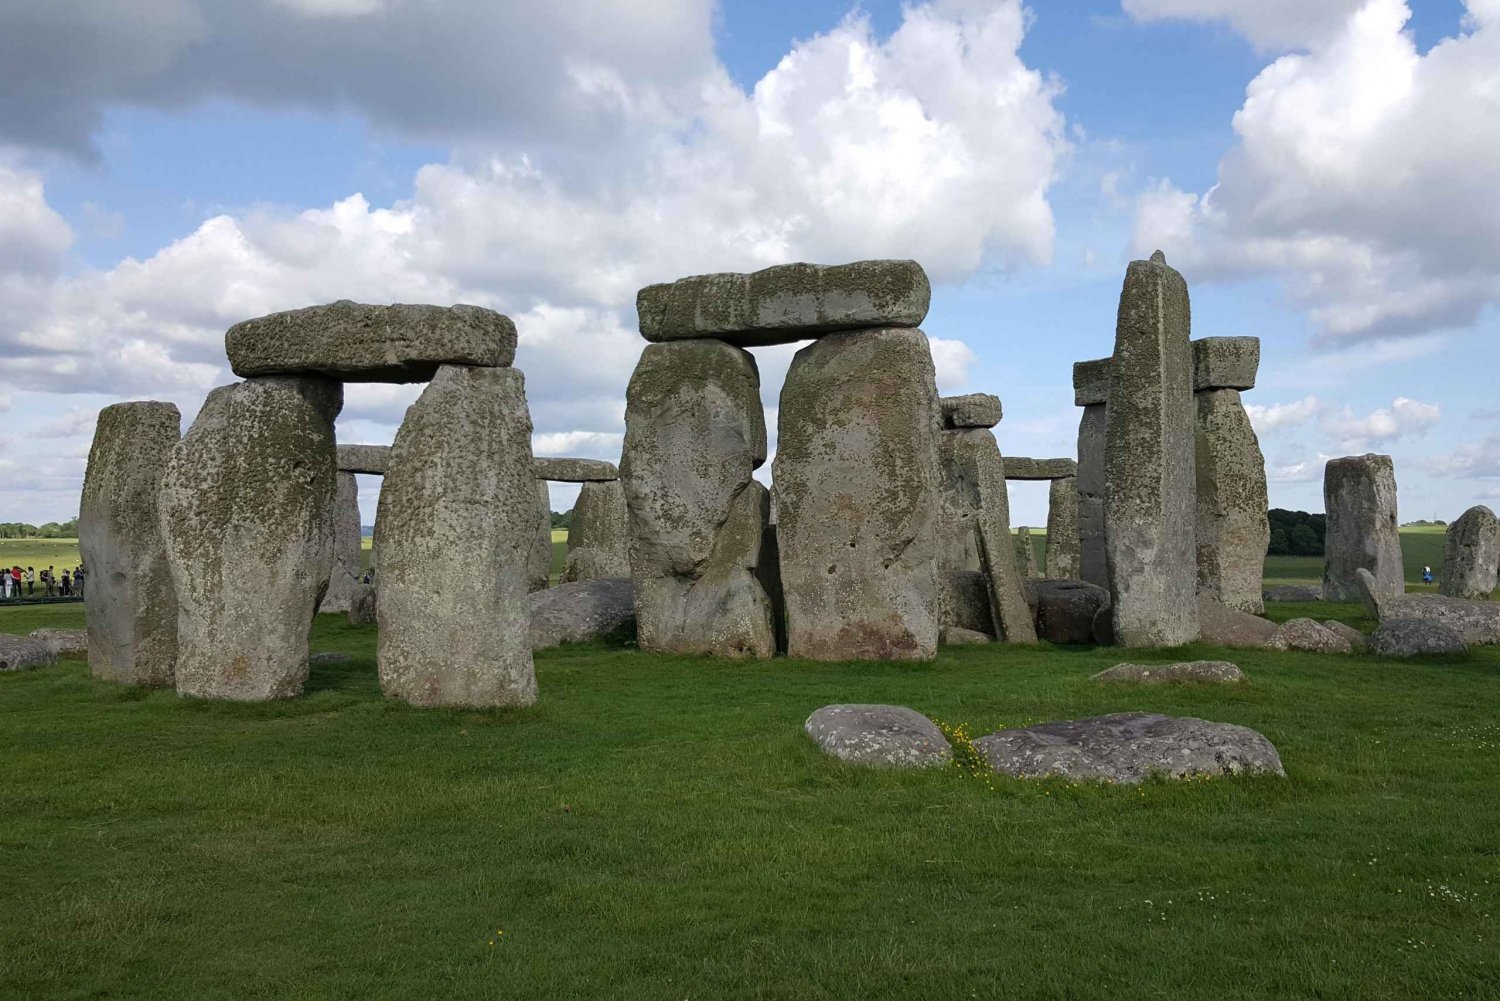 King Arthur Tour: Stonehenge, Glastonbury and Avebury